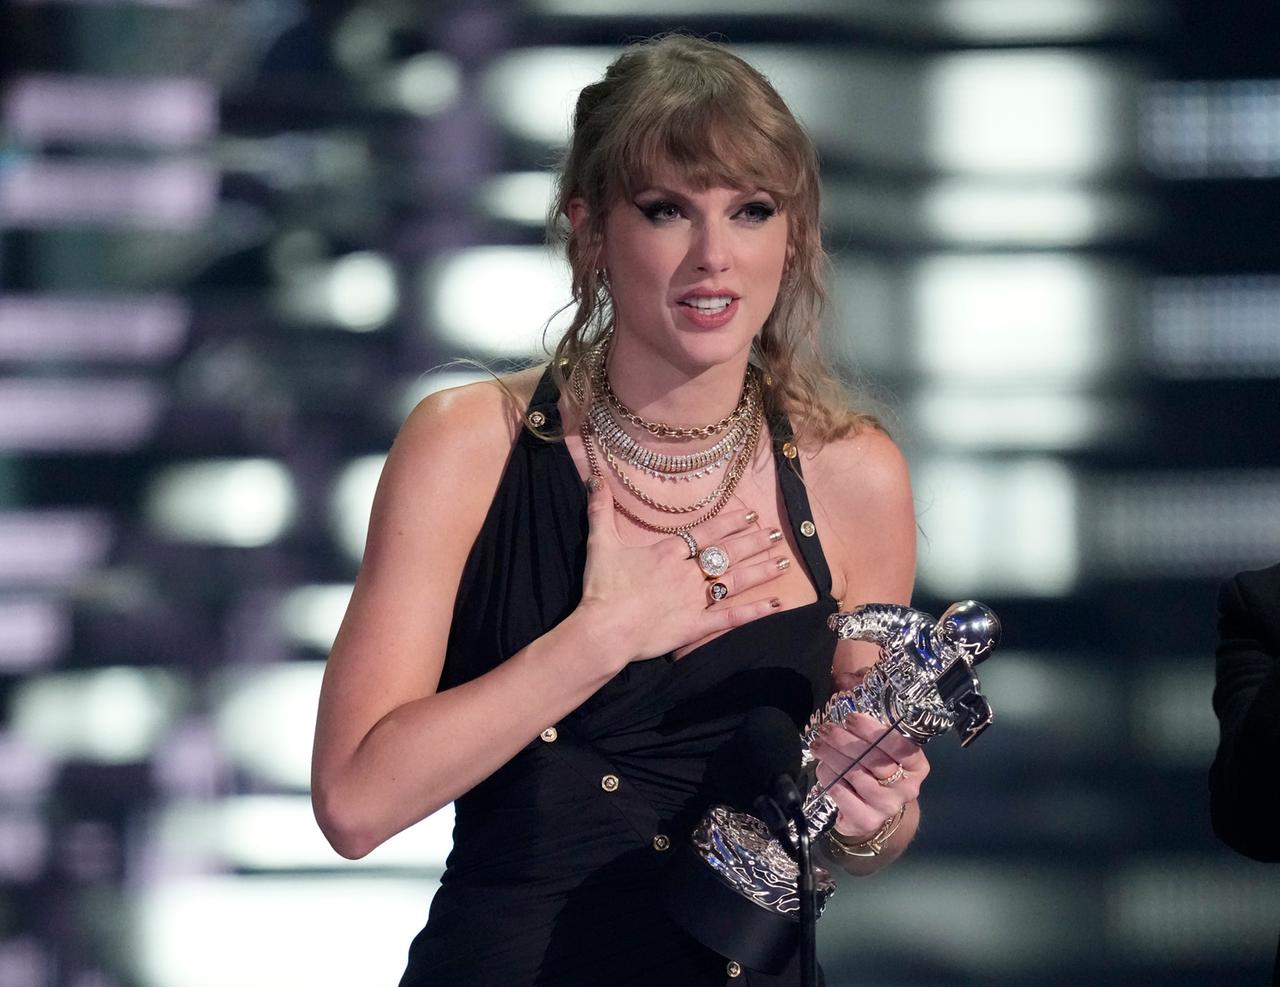 Die Musikerin Taylor Swift steht auf der Bühne, hält einen MTV Award in der Hand und macht eine Geste der Rührung.